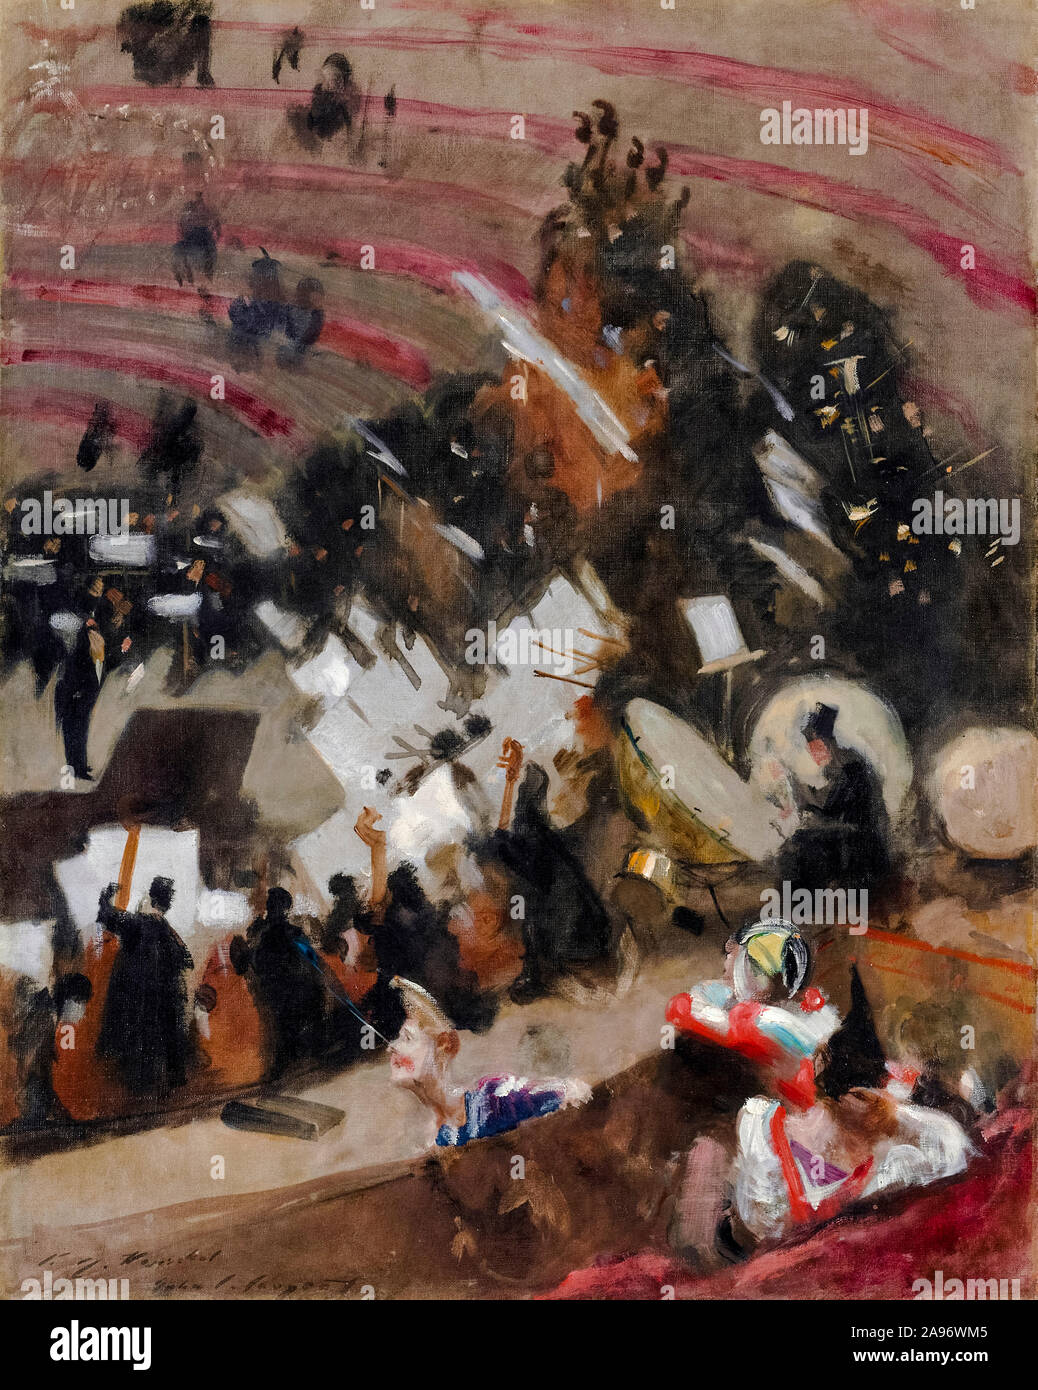 John Singer Sargent, répétition de l'Orchestre Pasdeloup au Cirque d'hiver, peinture, vers 1879 Banque D'Images